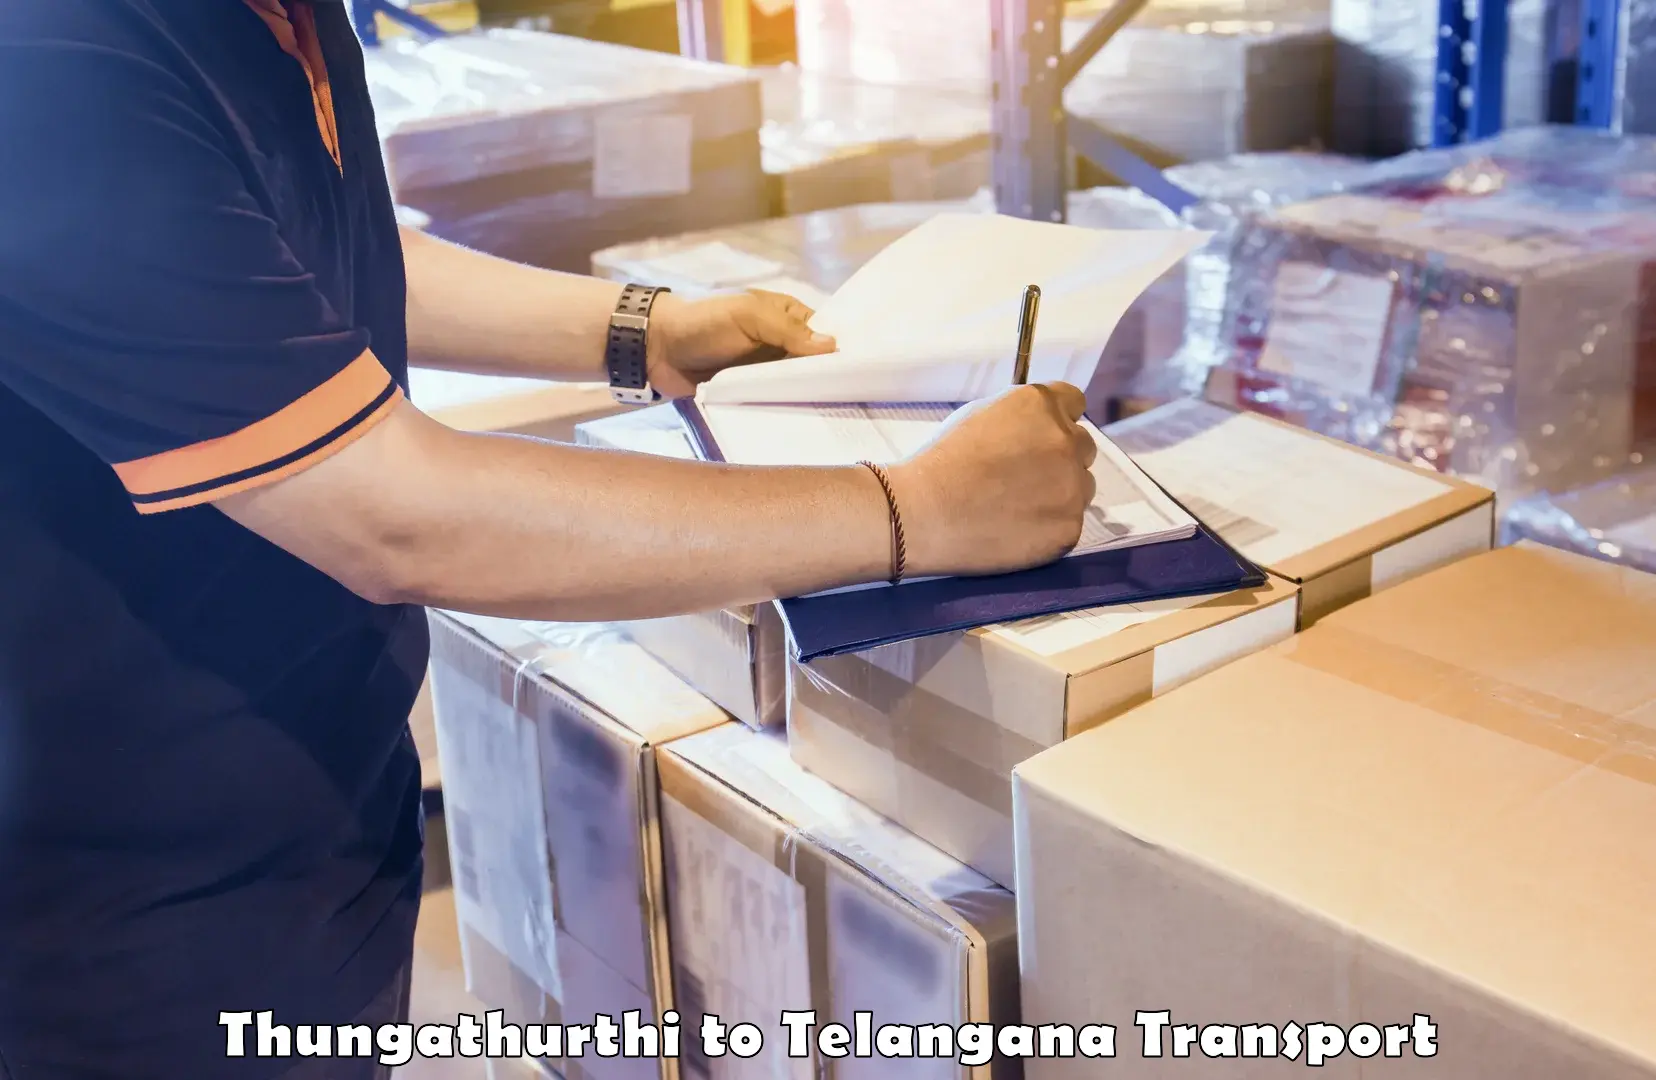 Land transport services Thungathurthi to Manthani